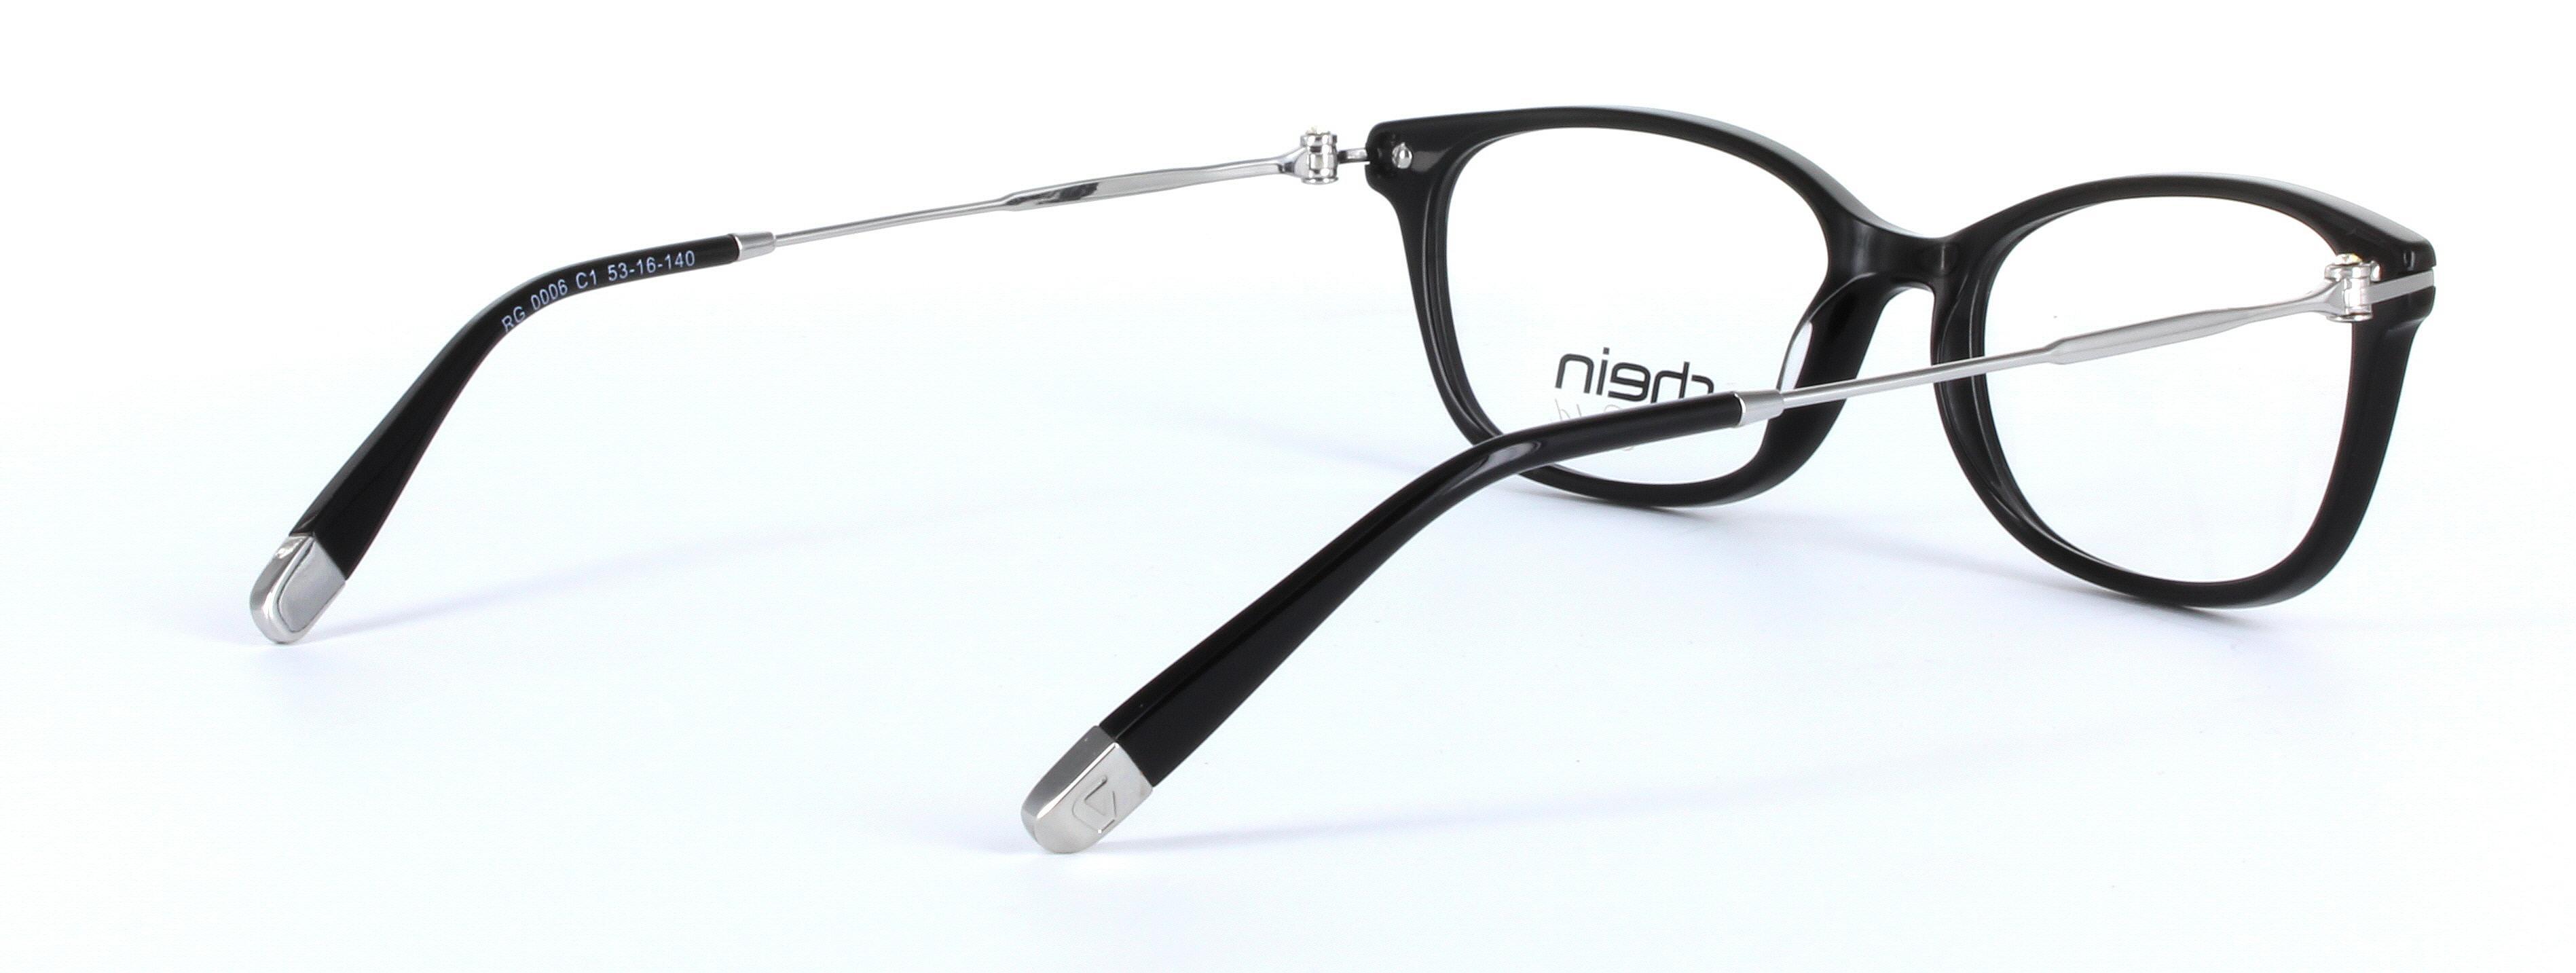 Locarno Black Full Rim Oval Plastic Glasses - Image View 4